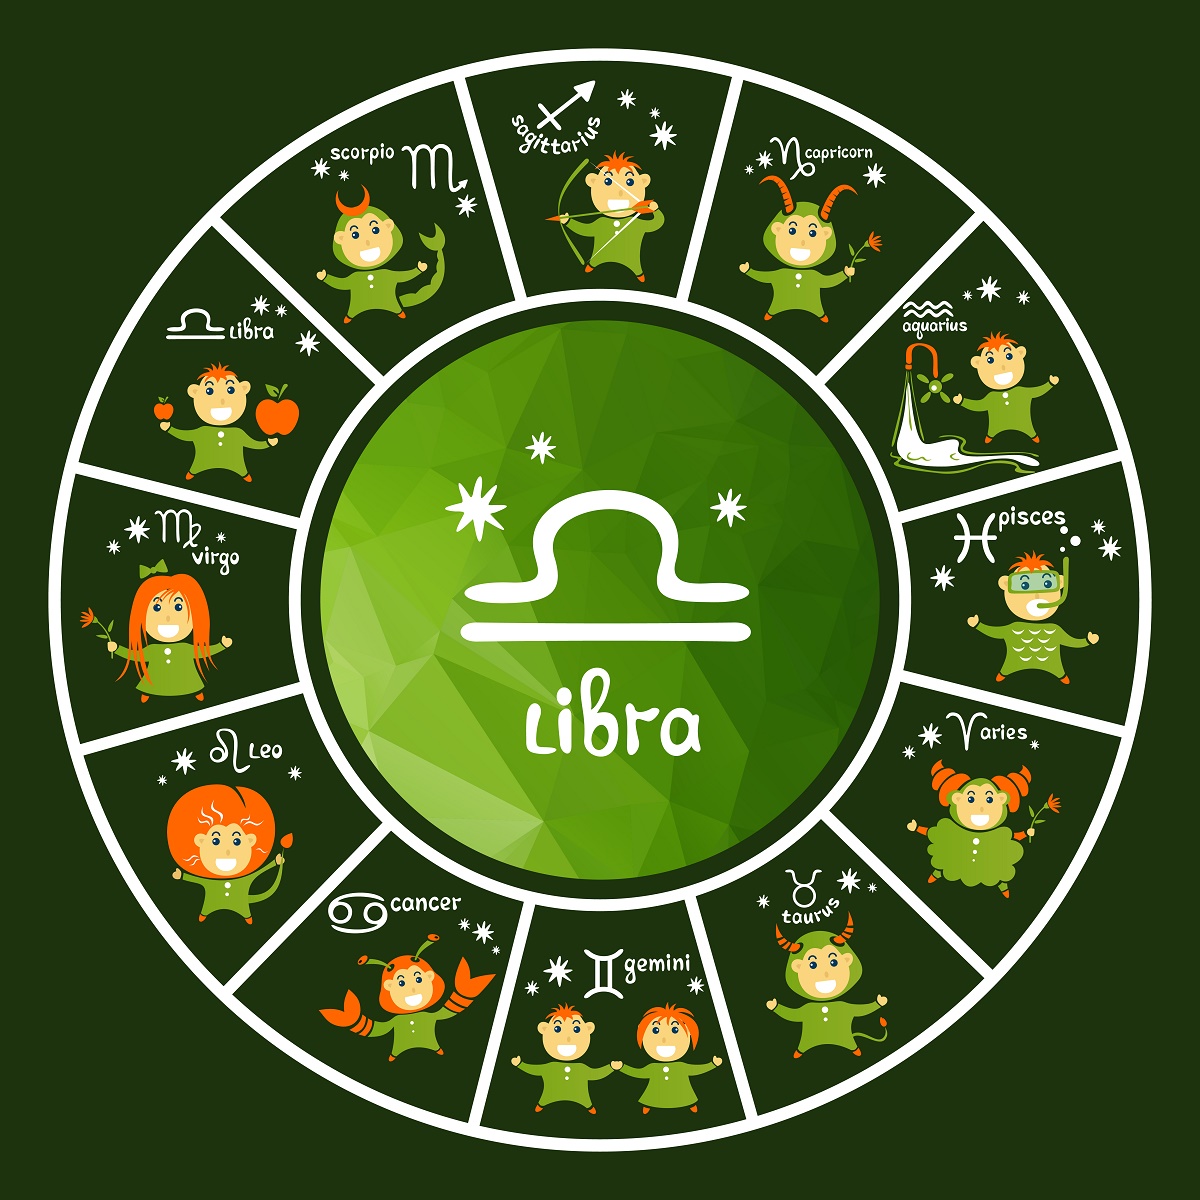 Horoscop săptămânal 26 iunie - 2 iulie 2017 Oana Hanganu Balanţă. Previziunile astrologului Oana Hanganu pentru zodia Balanţă.